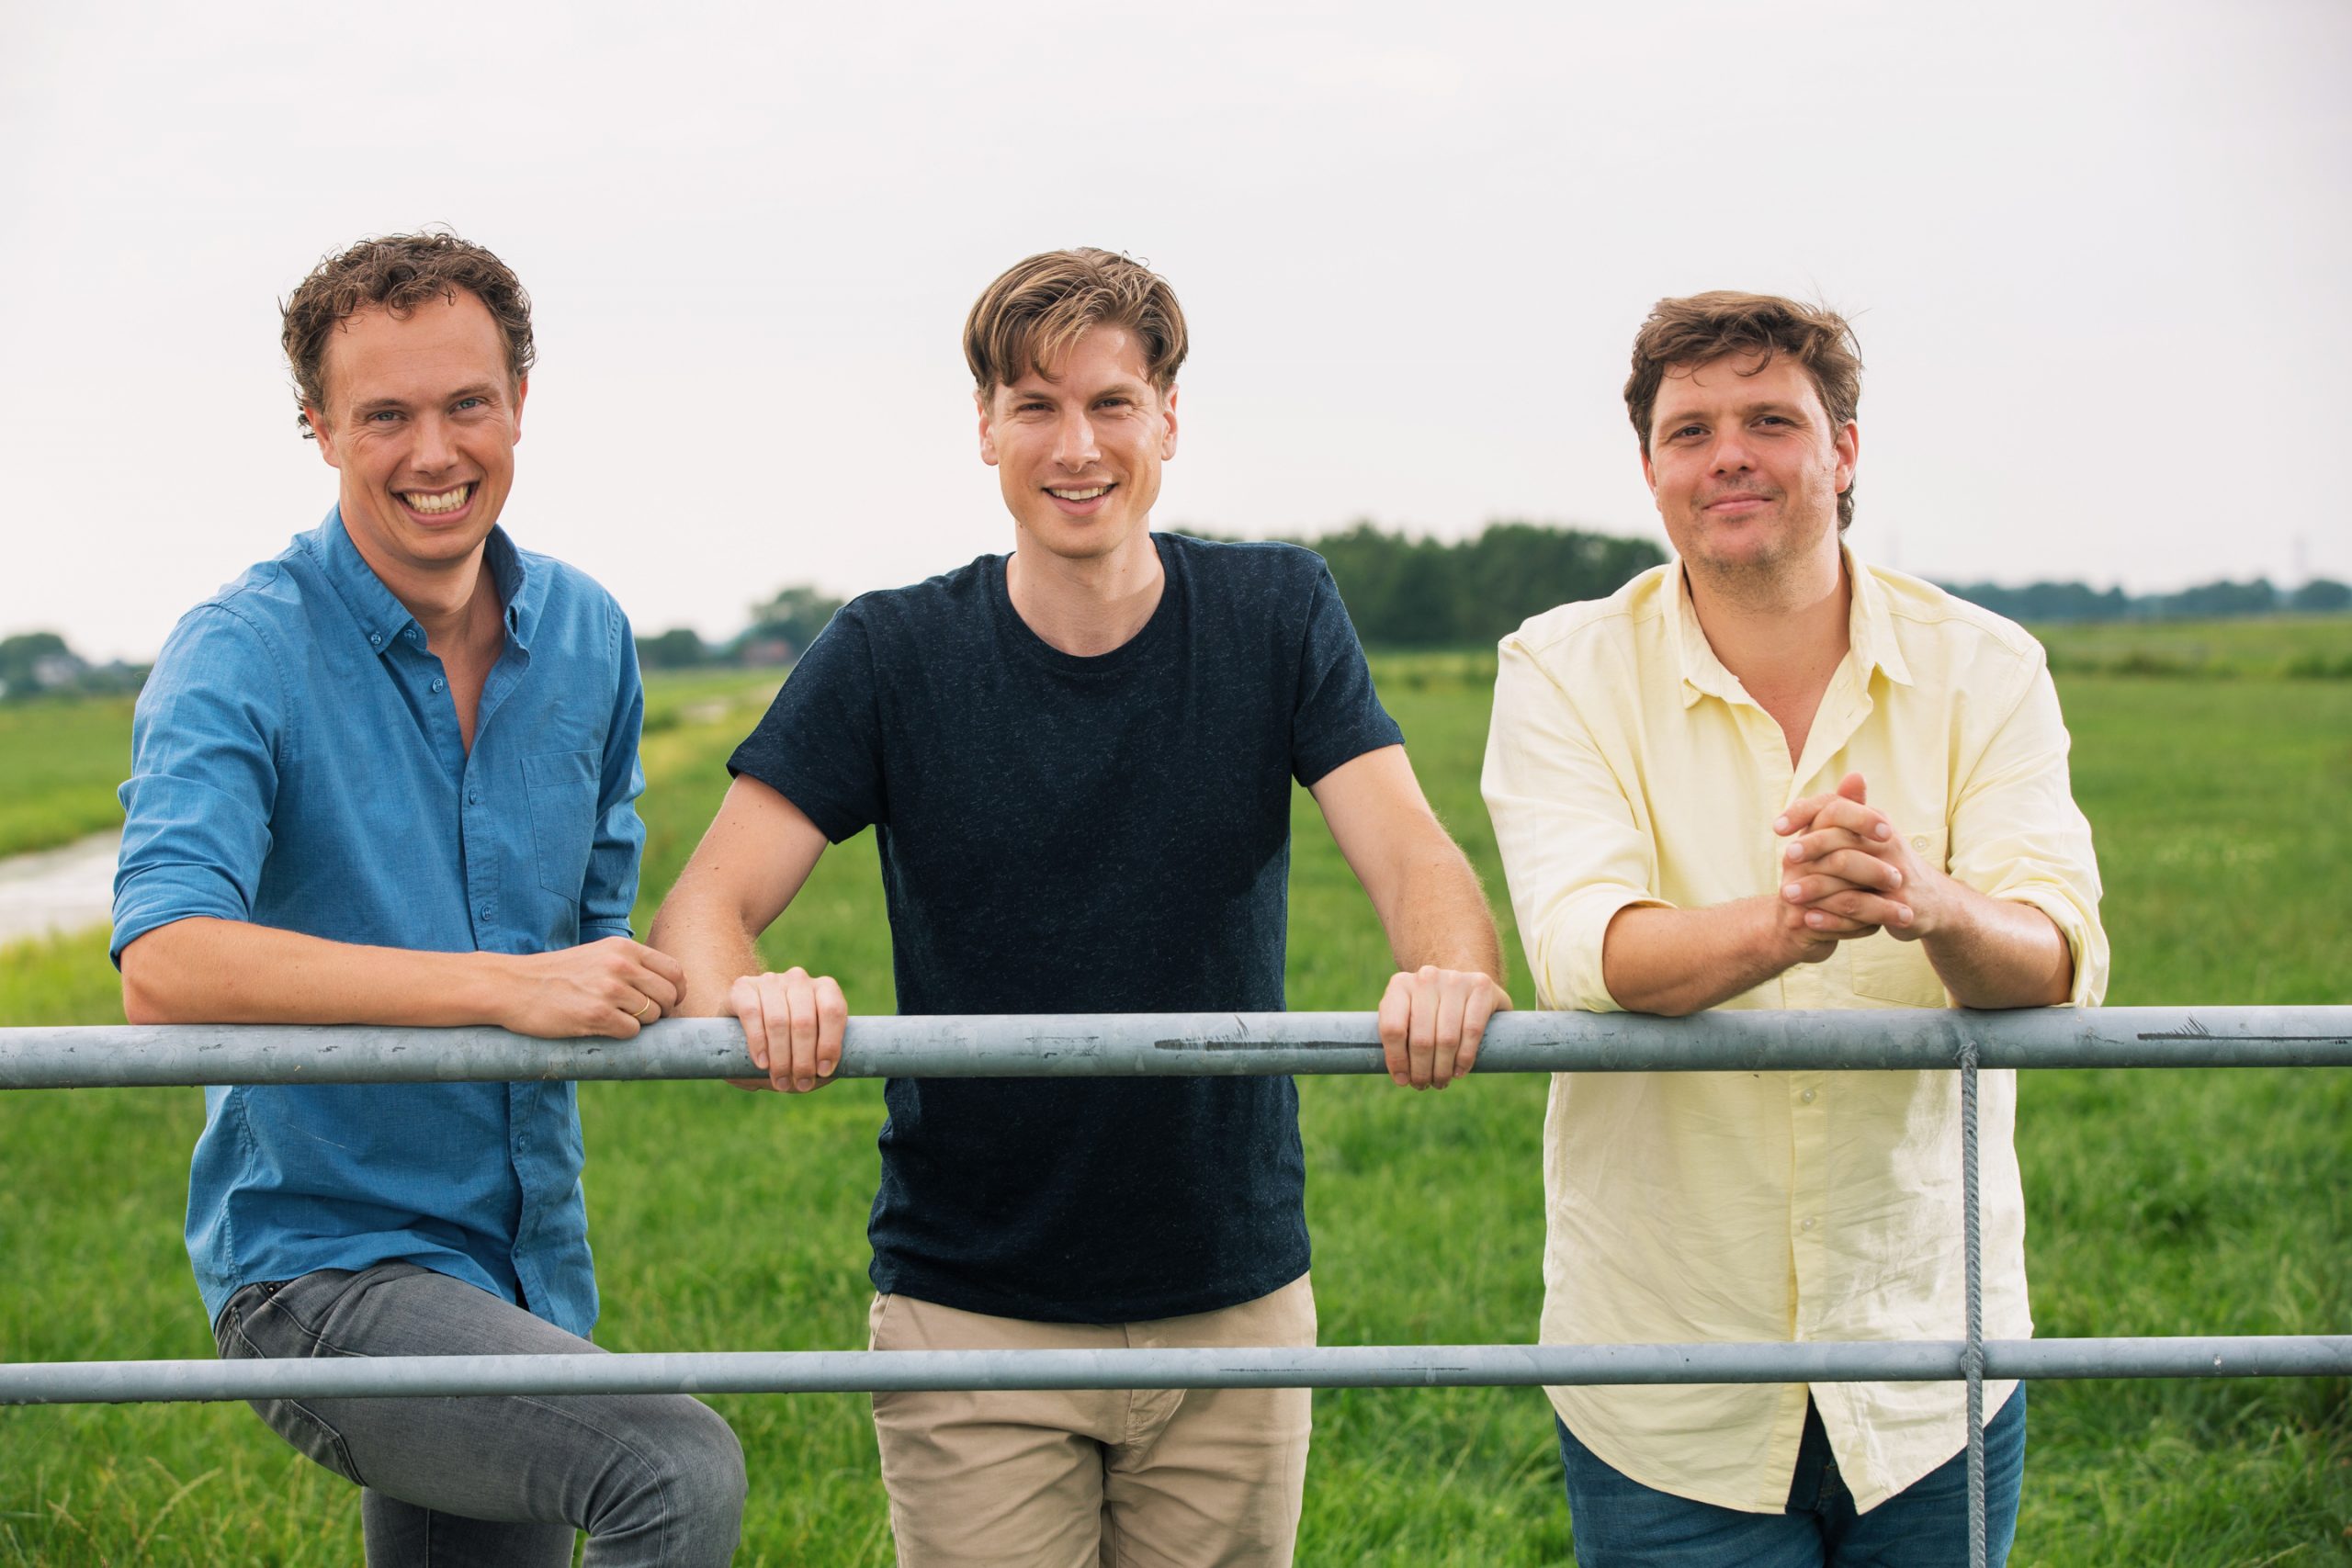 De oprichters van Crisp: Tom Peeters, Eric Klaassen en Michiel Roodenburg.